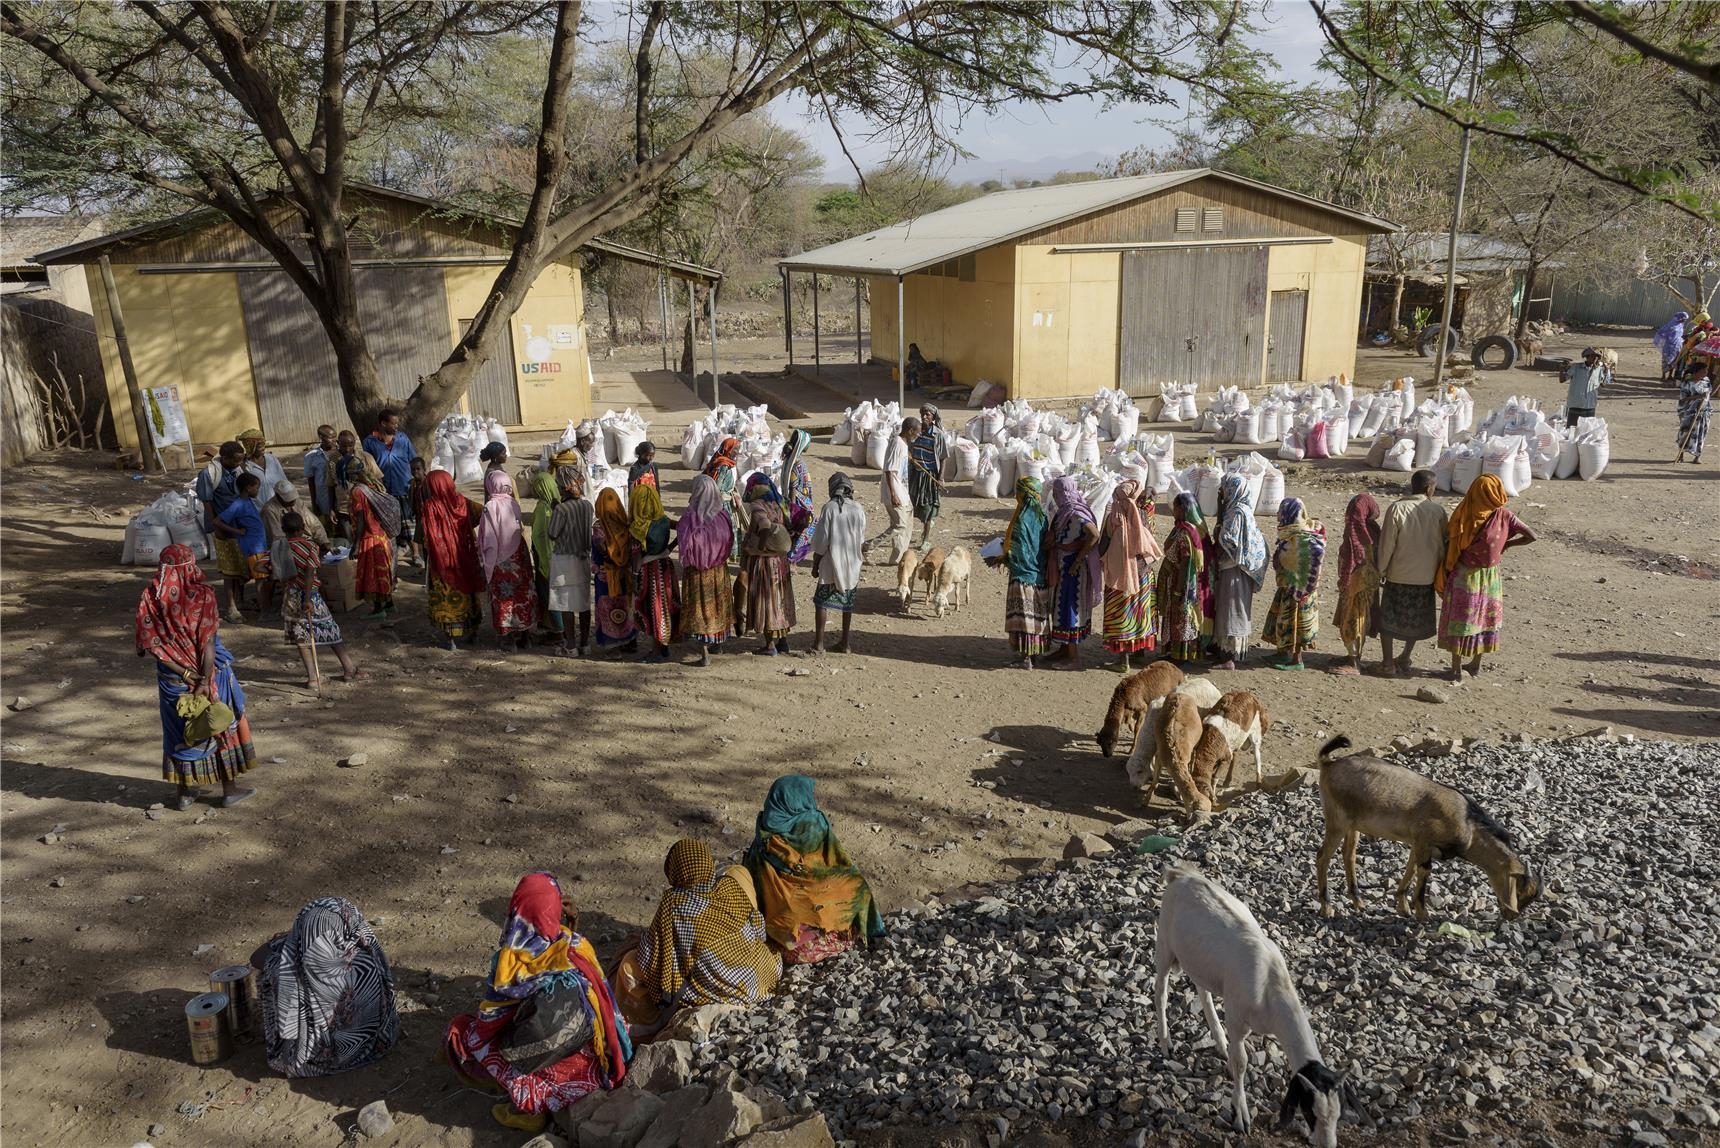 Menschenmenge und Ziegen in Äthiopien (Christoph Gödan)